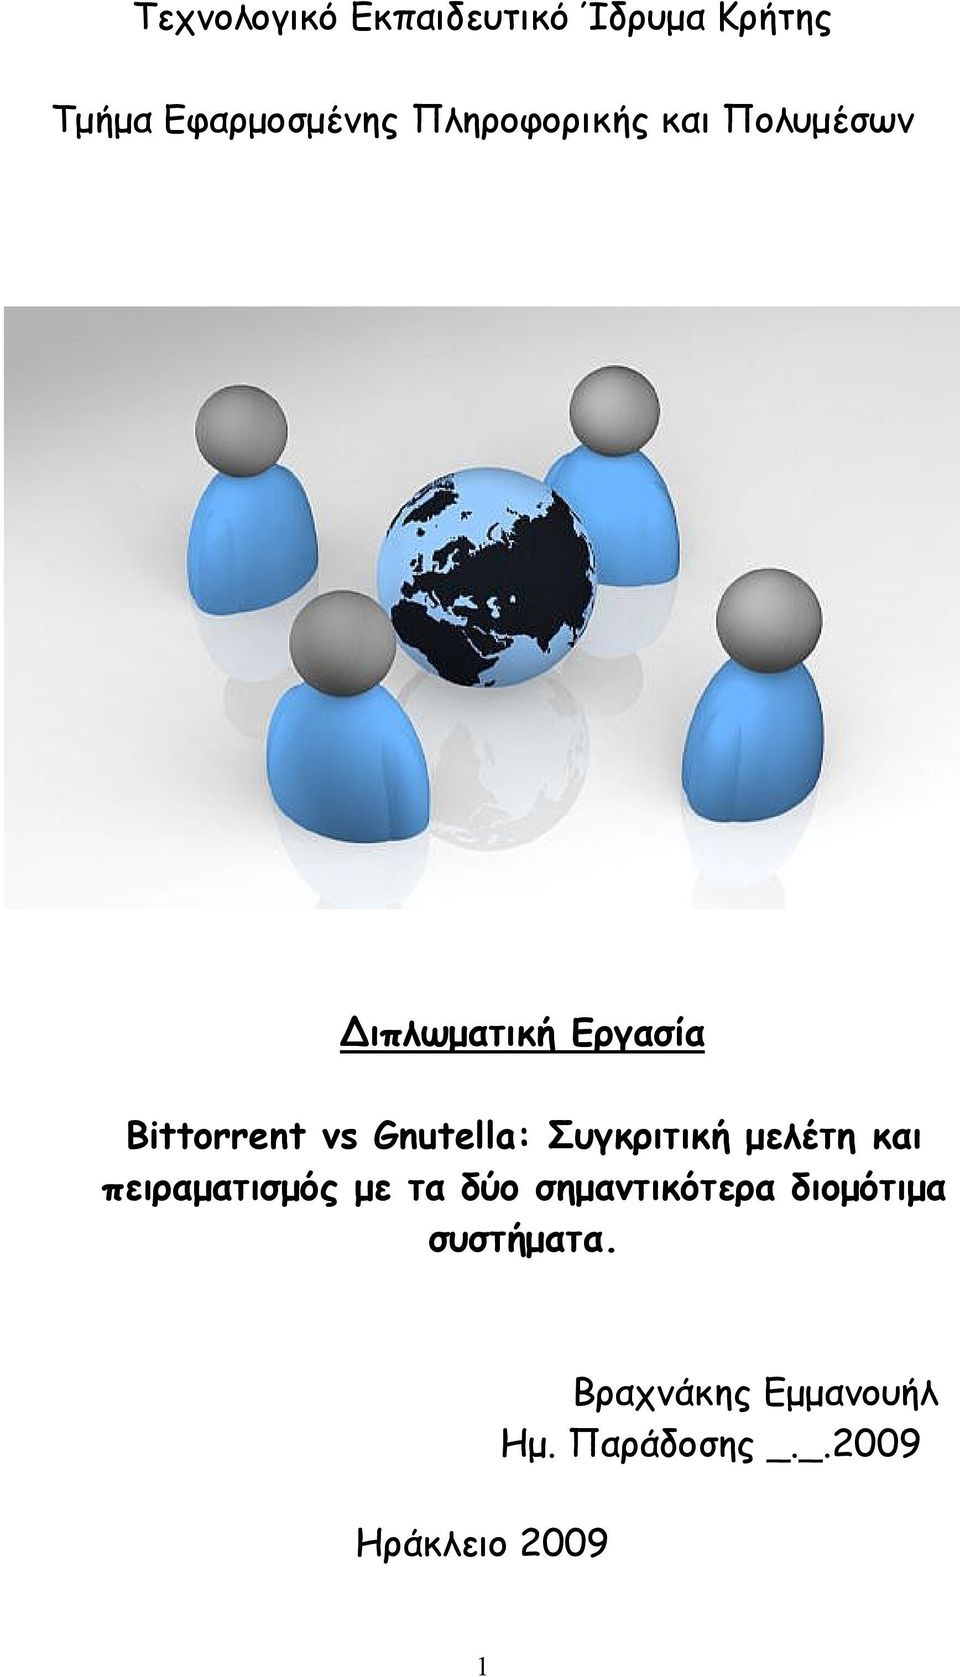 Gnutella: Συγκριτική μελέτη και πειραματισμός με τα δύο